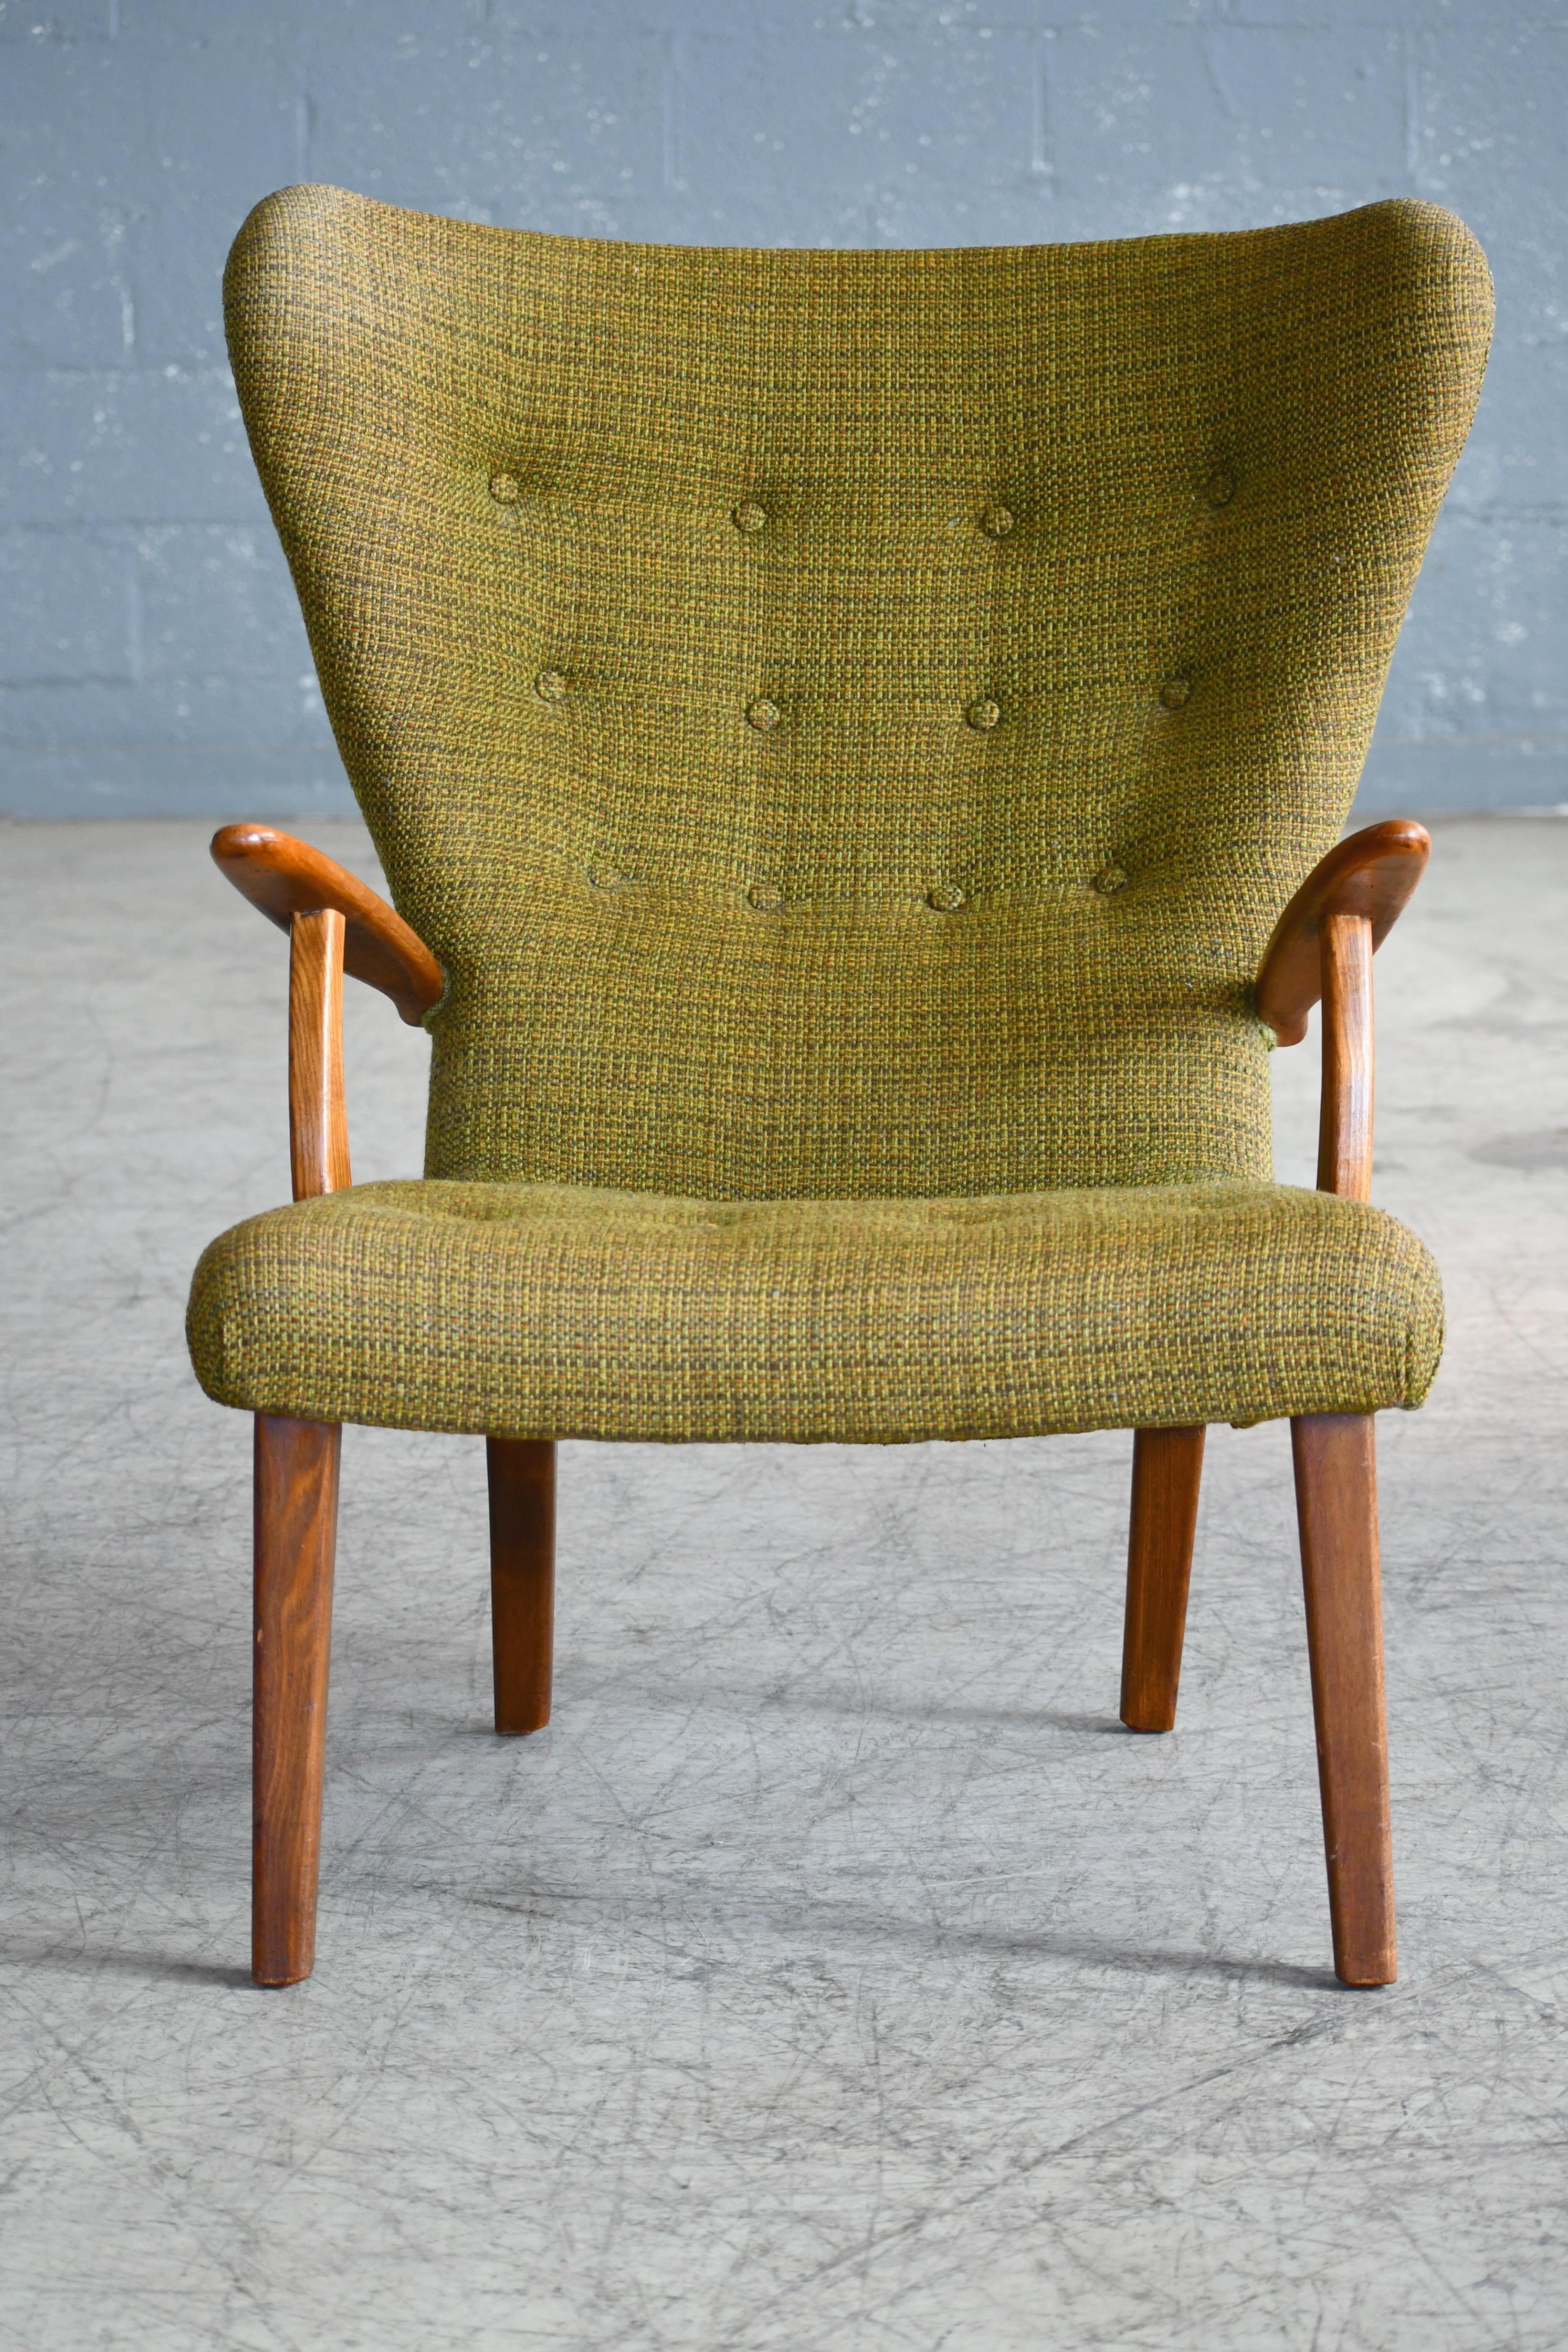 Scandinavian Modern Danish 1950s Lounge Chair Model Pragh by Madsen and Schubell